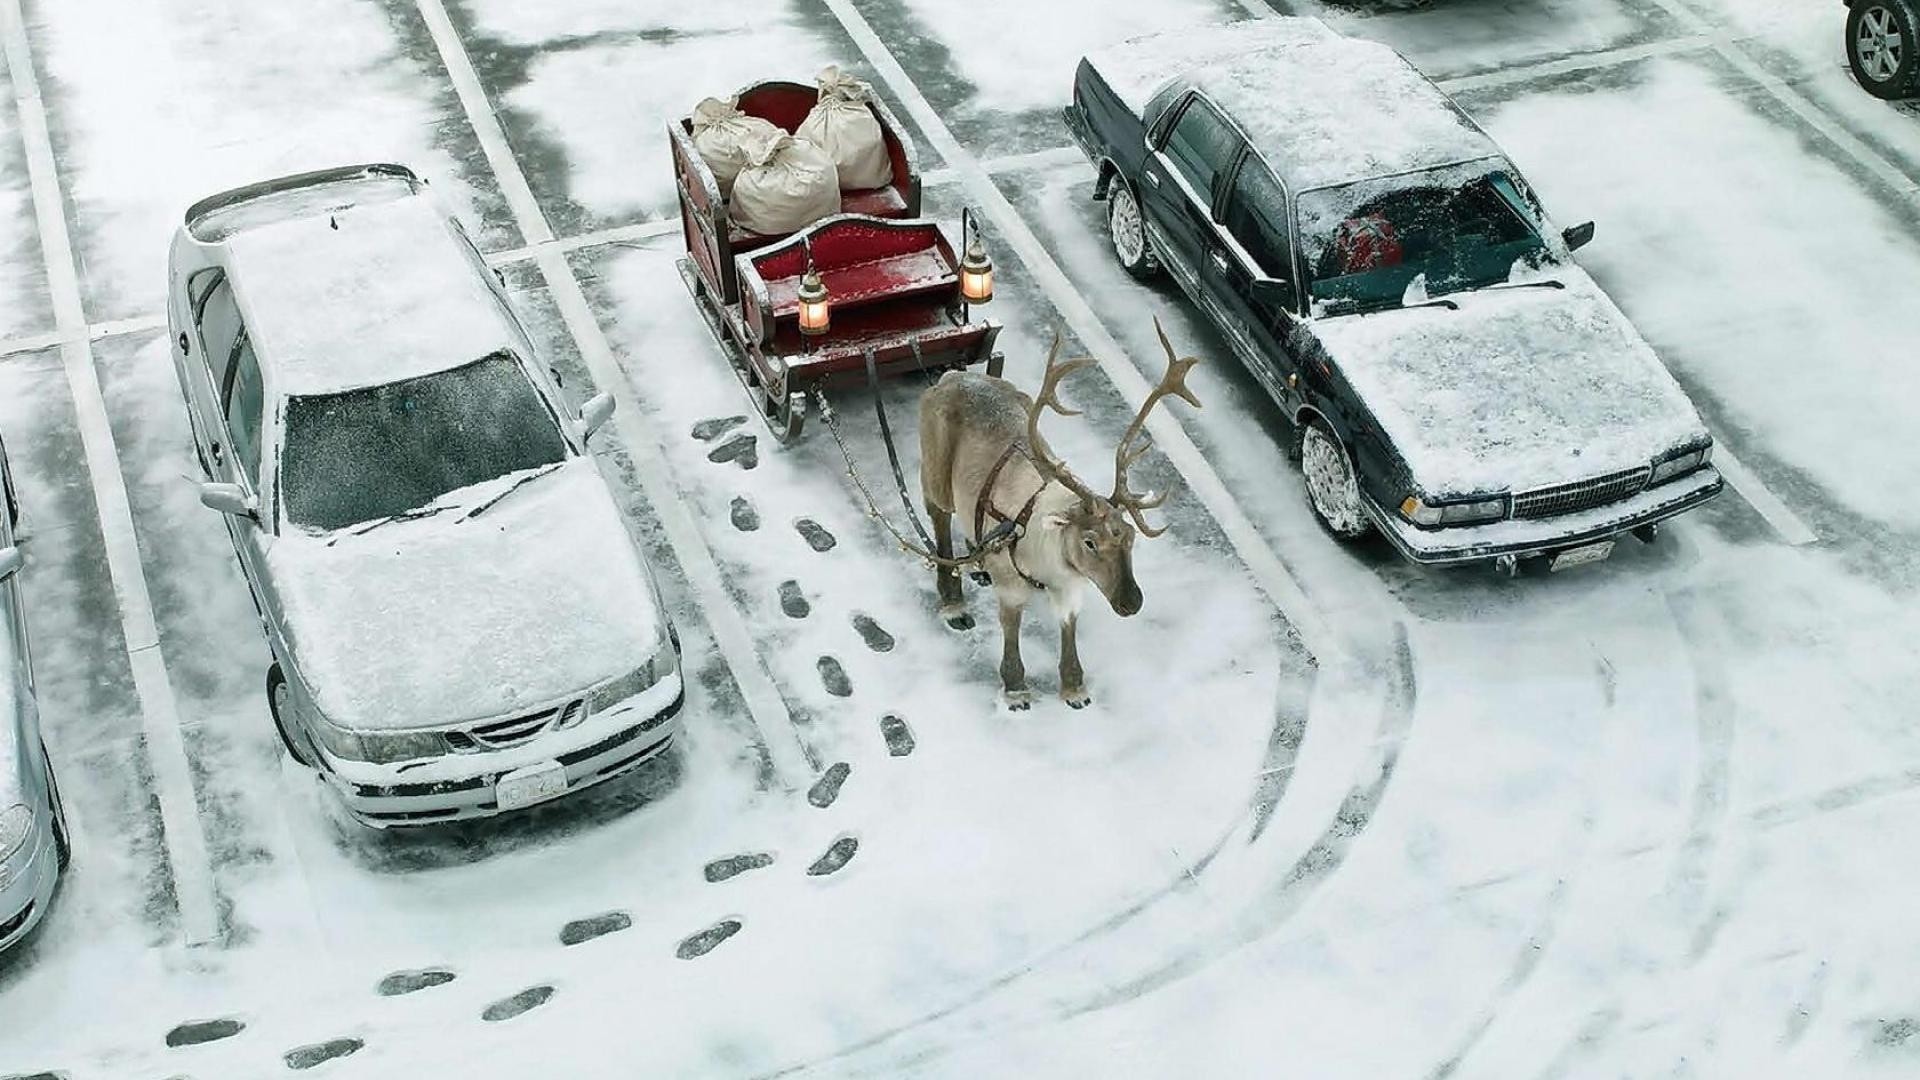 Обои для телефона смешно снег рождество юмор сани автомобили зима олень